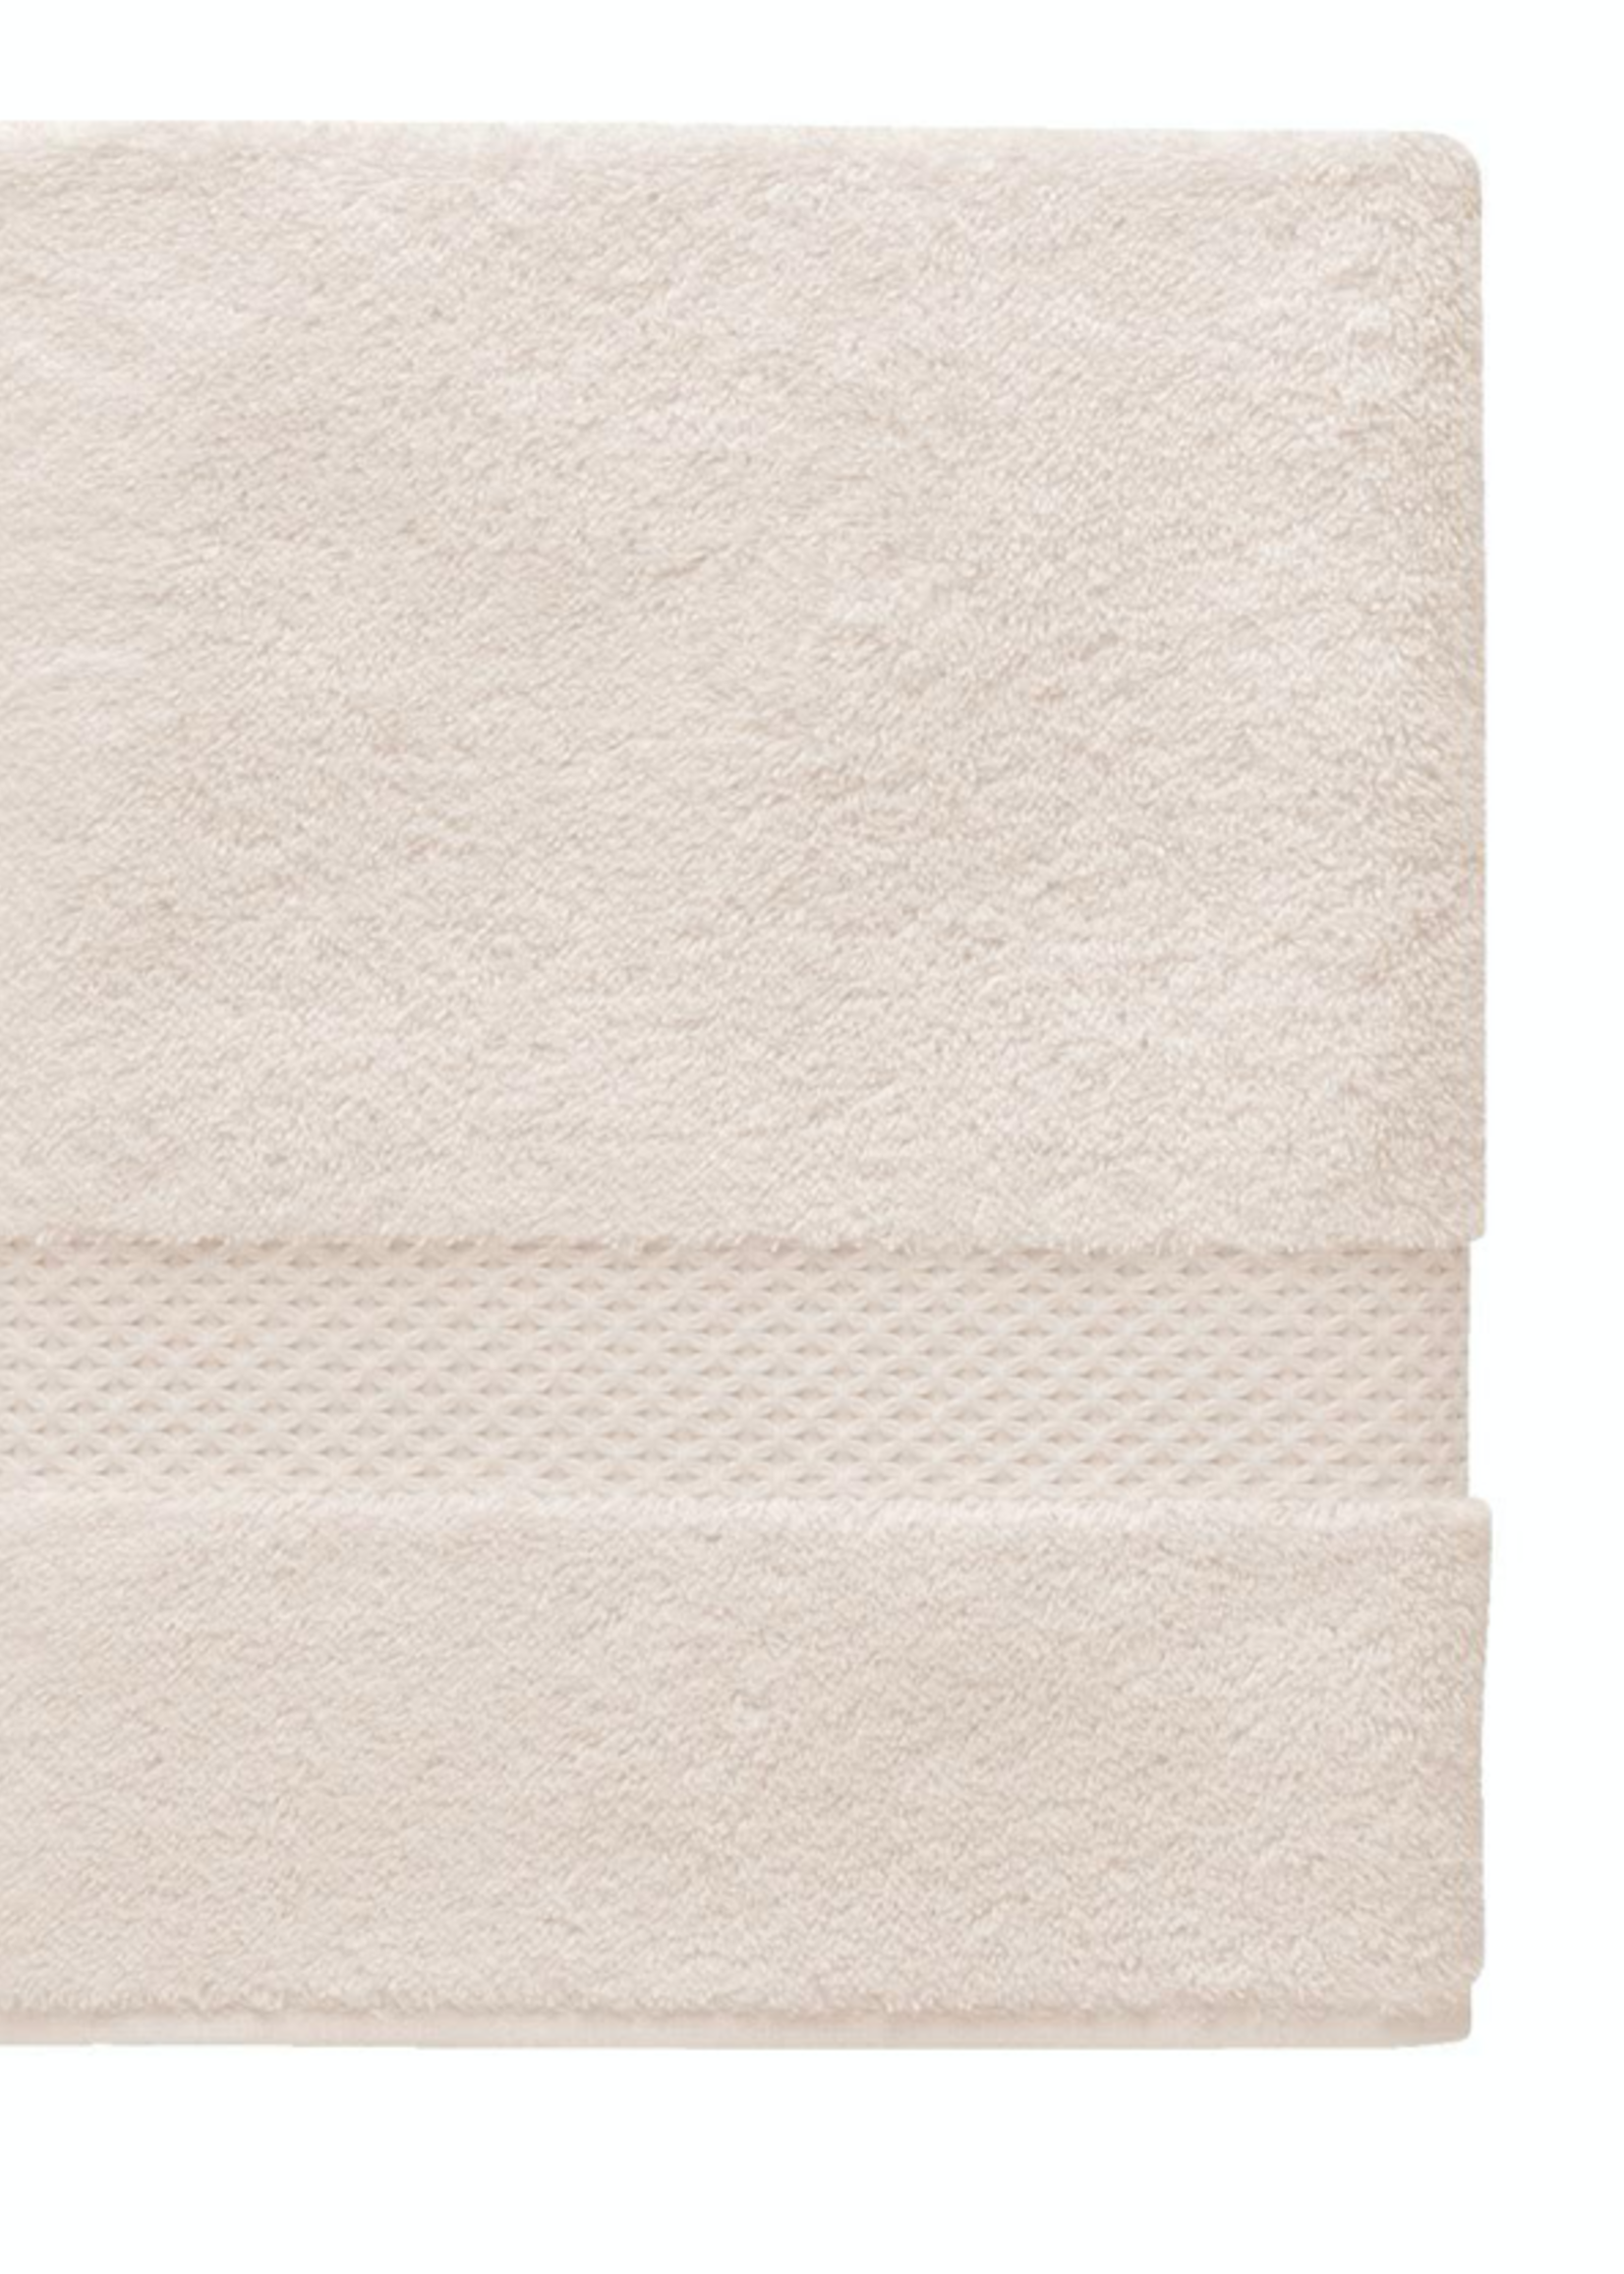 YVES DELORME ETOILE (83% cotton, 17% modal) Bath Sheet